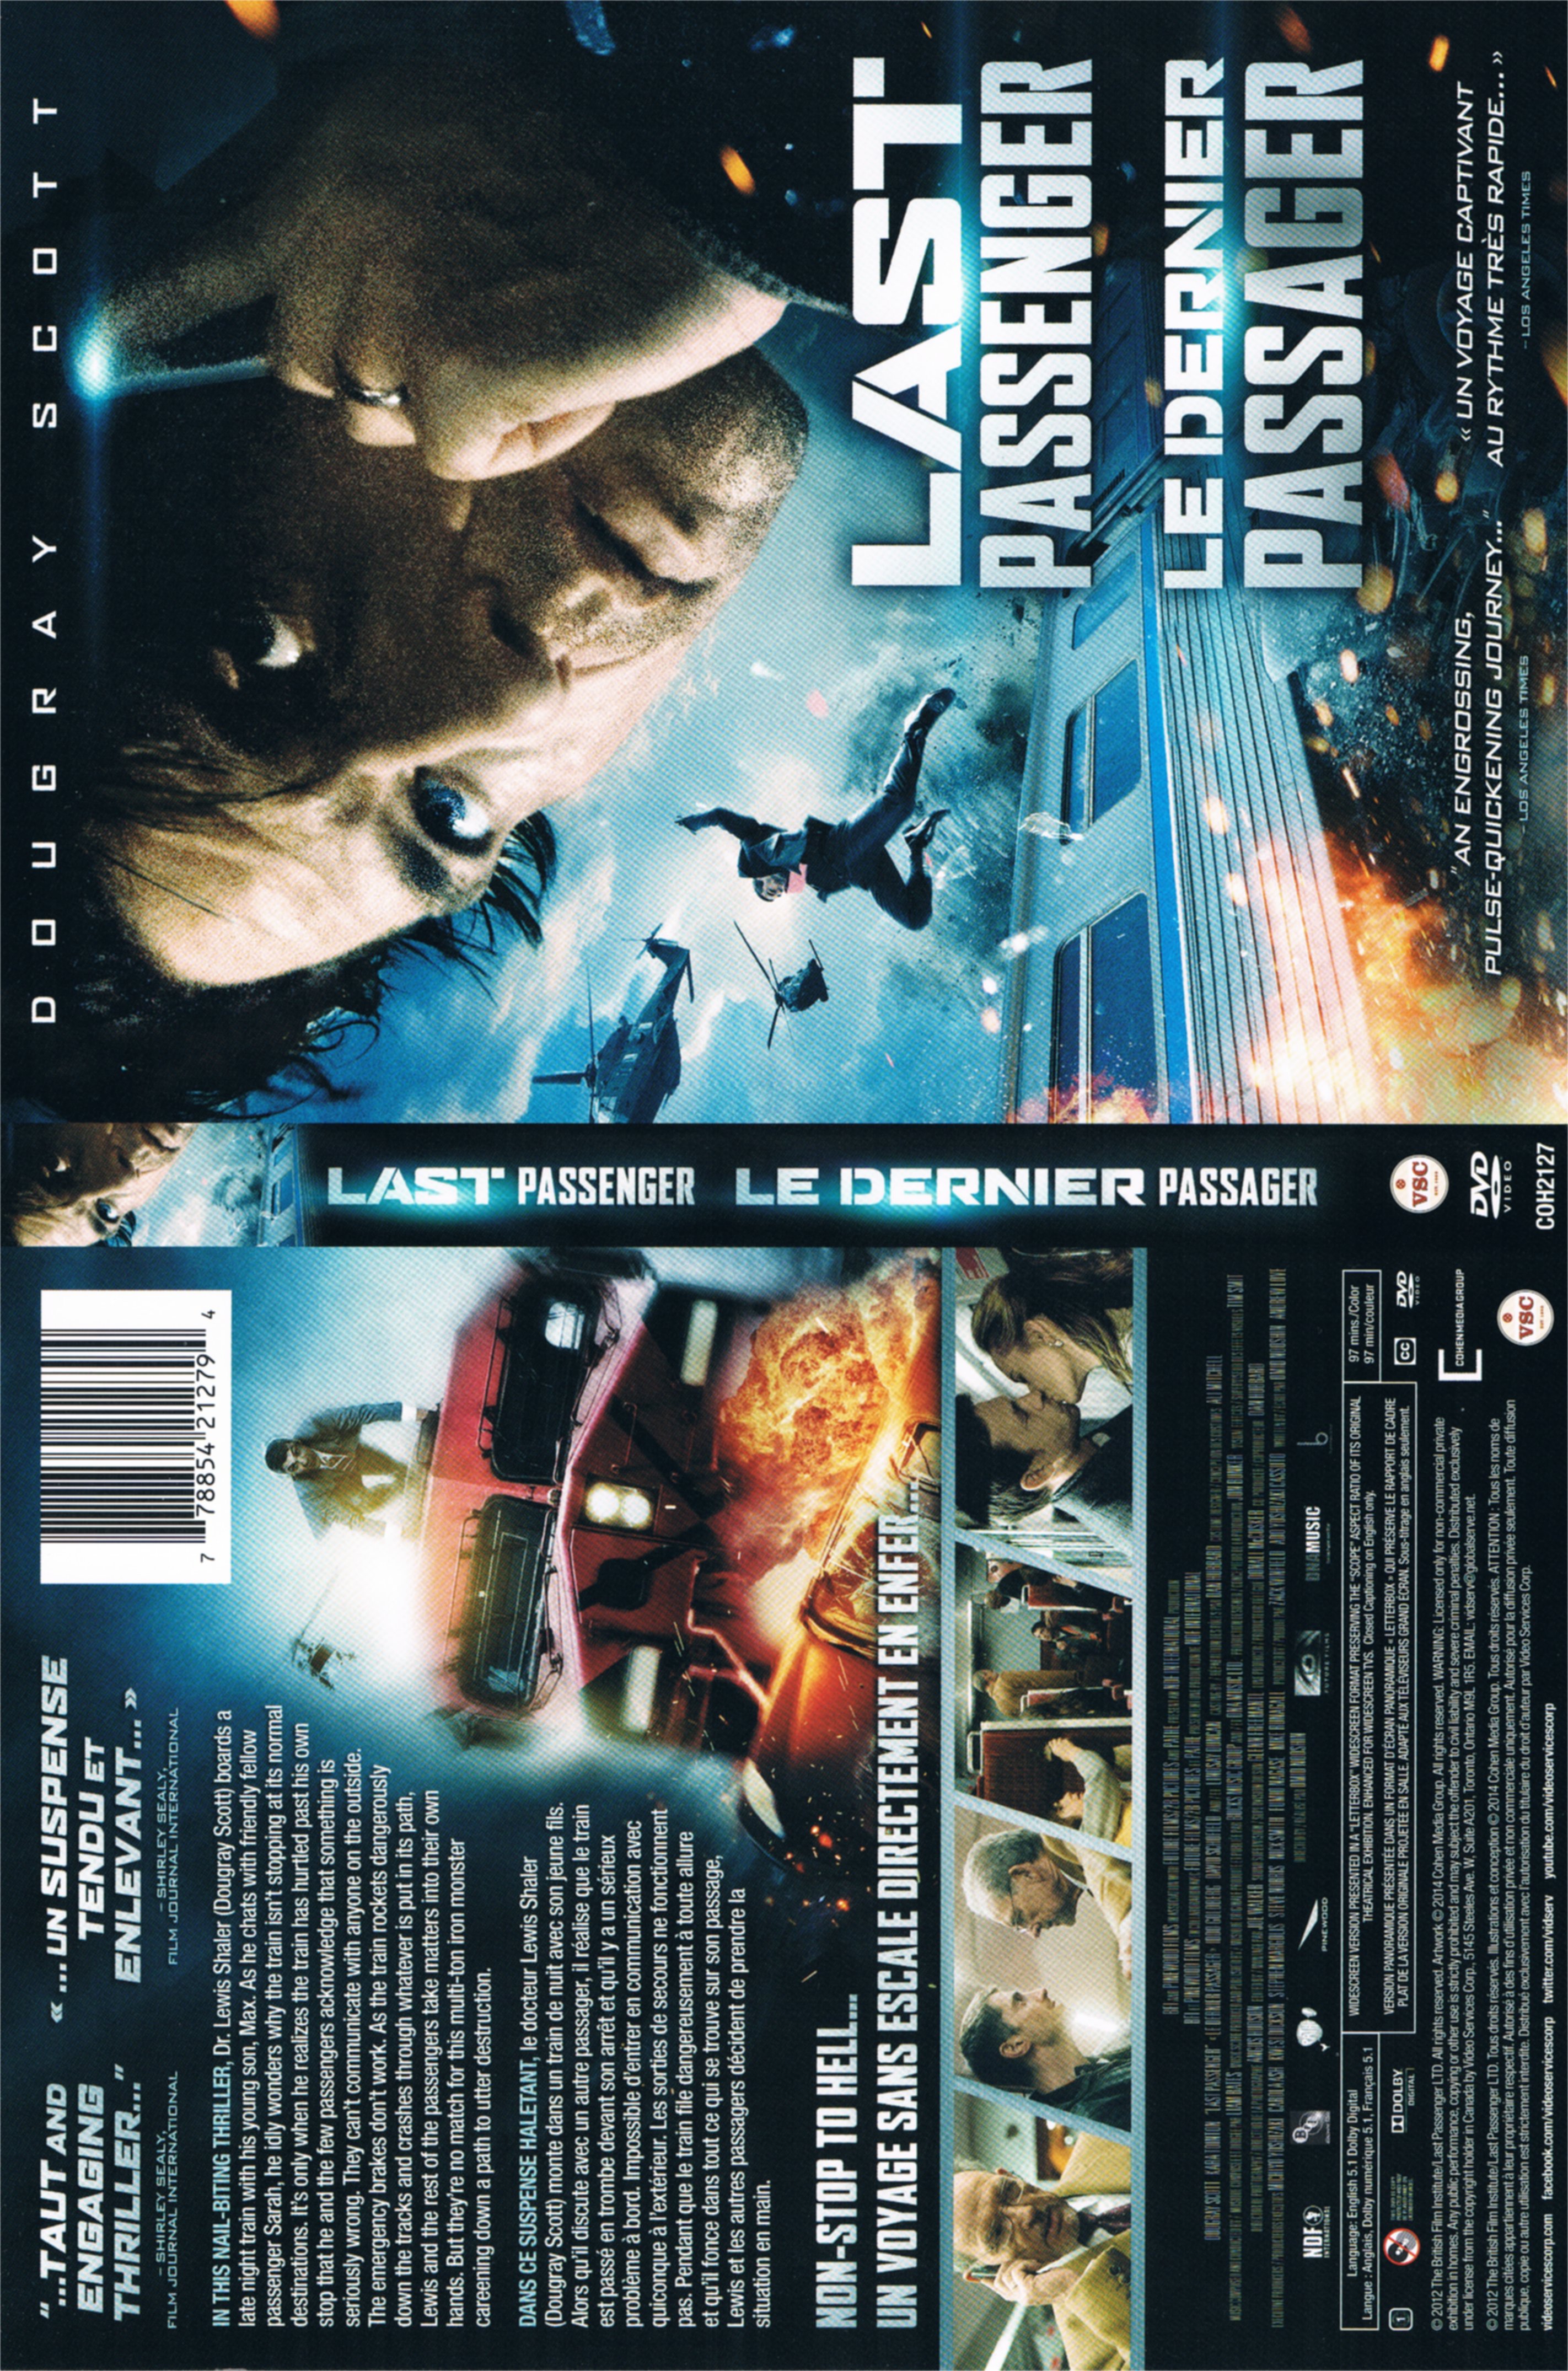 Jaquette DVD Last Passenger - Le dernier passager (Canadienne)